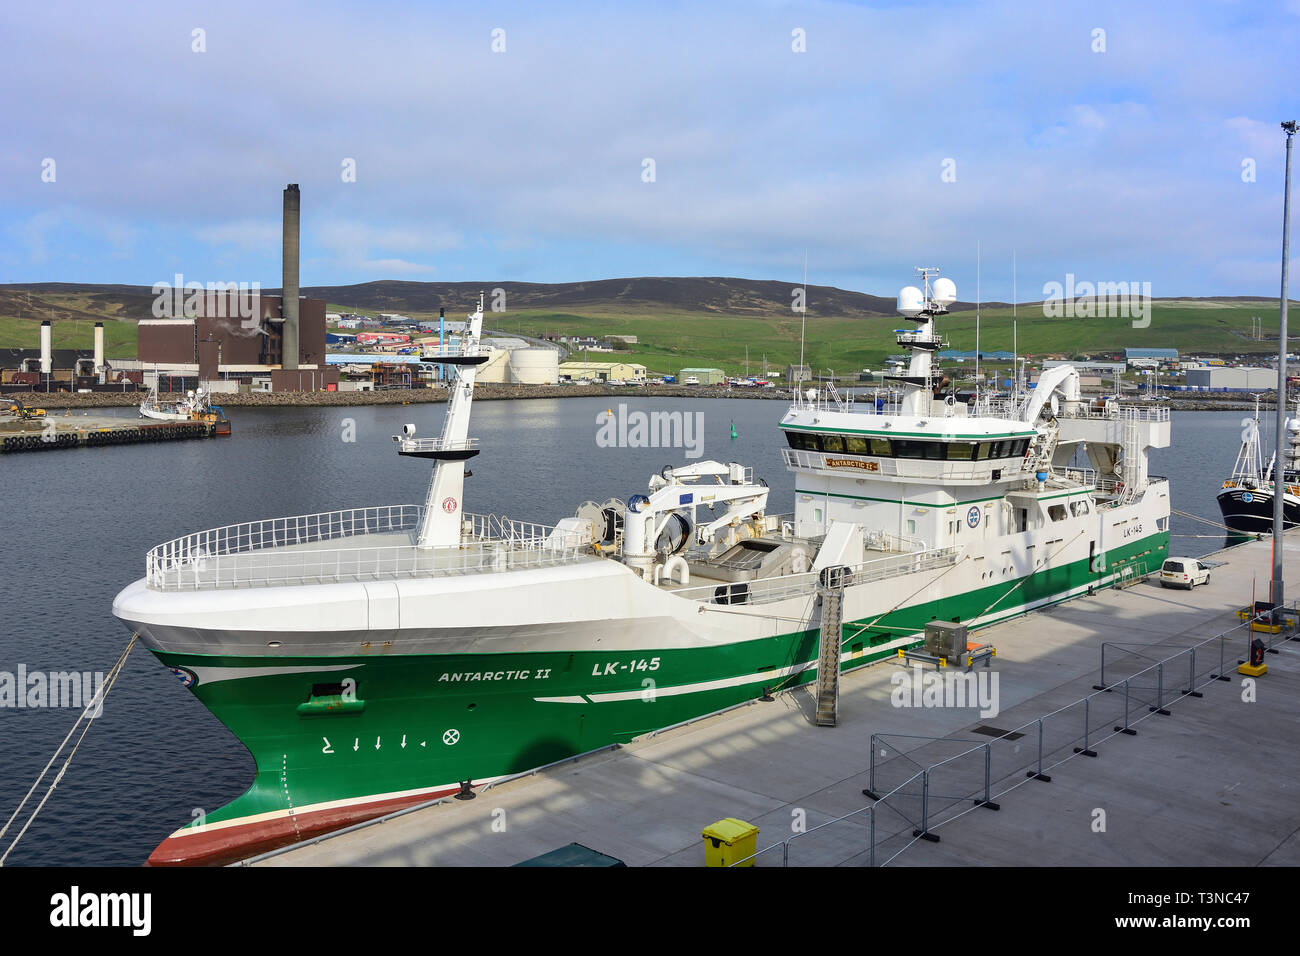 Antartica II bateau de pêche dans le port de Lerwick Lerwick, Shetland,, des îles du Nord, Ecosse, Royaume-Uni Banque D'Images